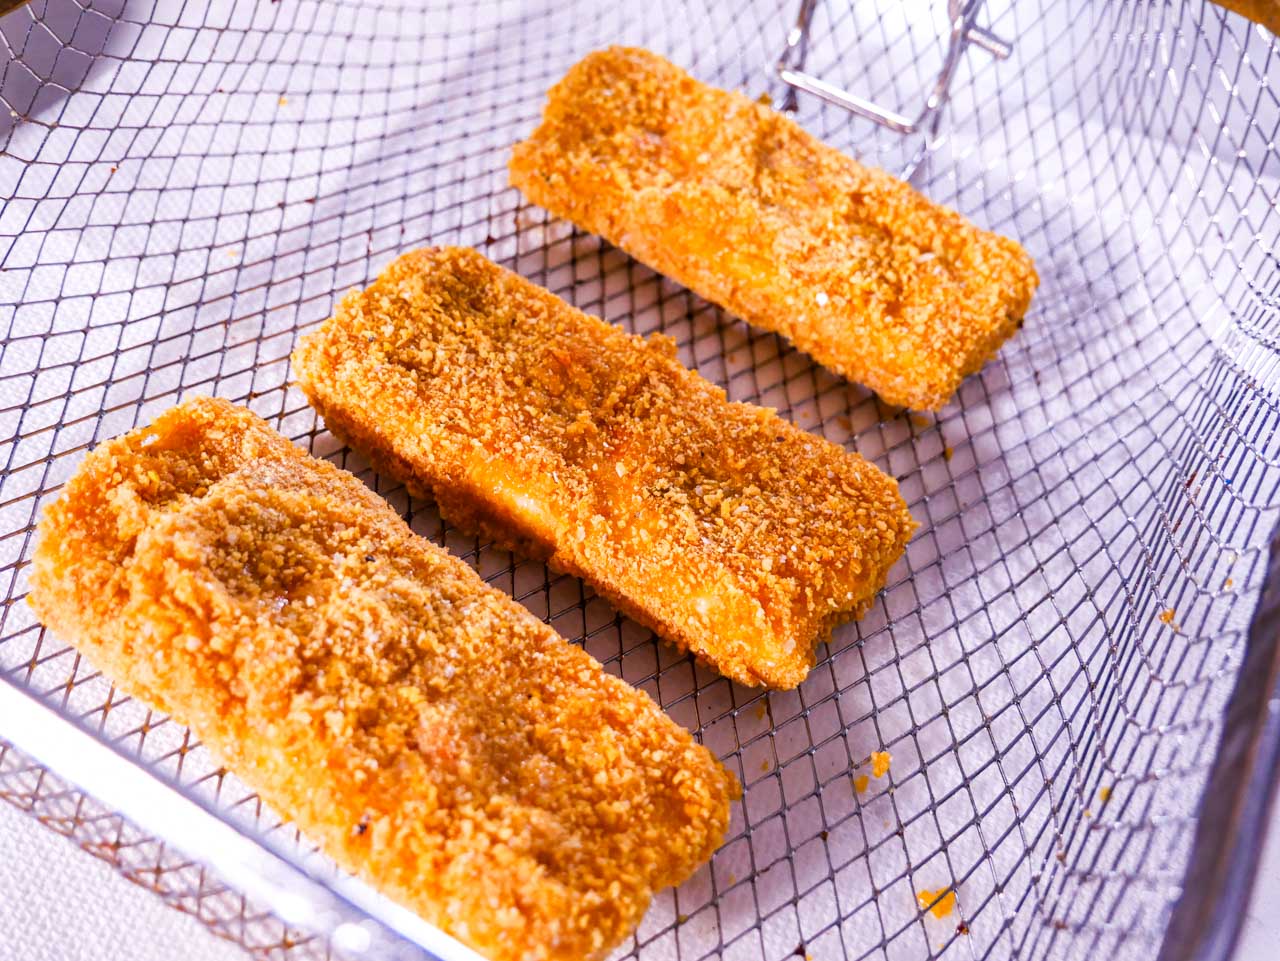 Breaded Mozzarella Sticks in deep fryer basket, pre-fry.